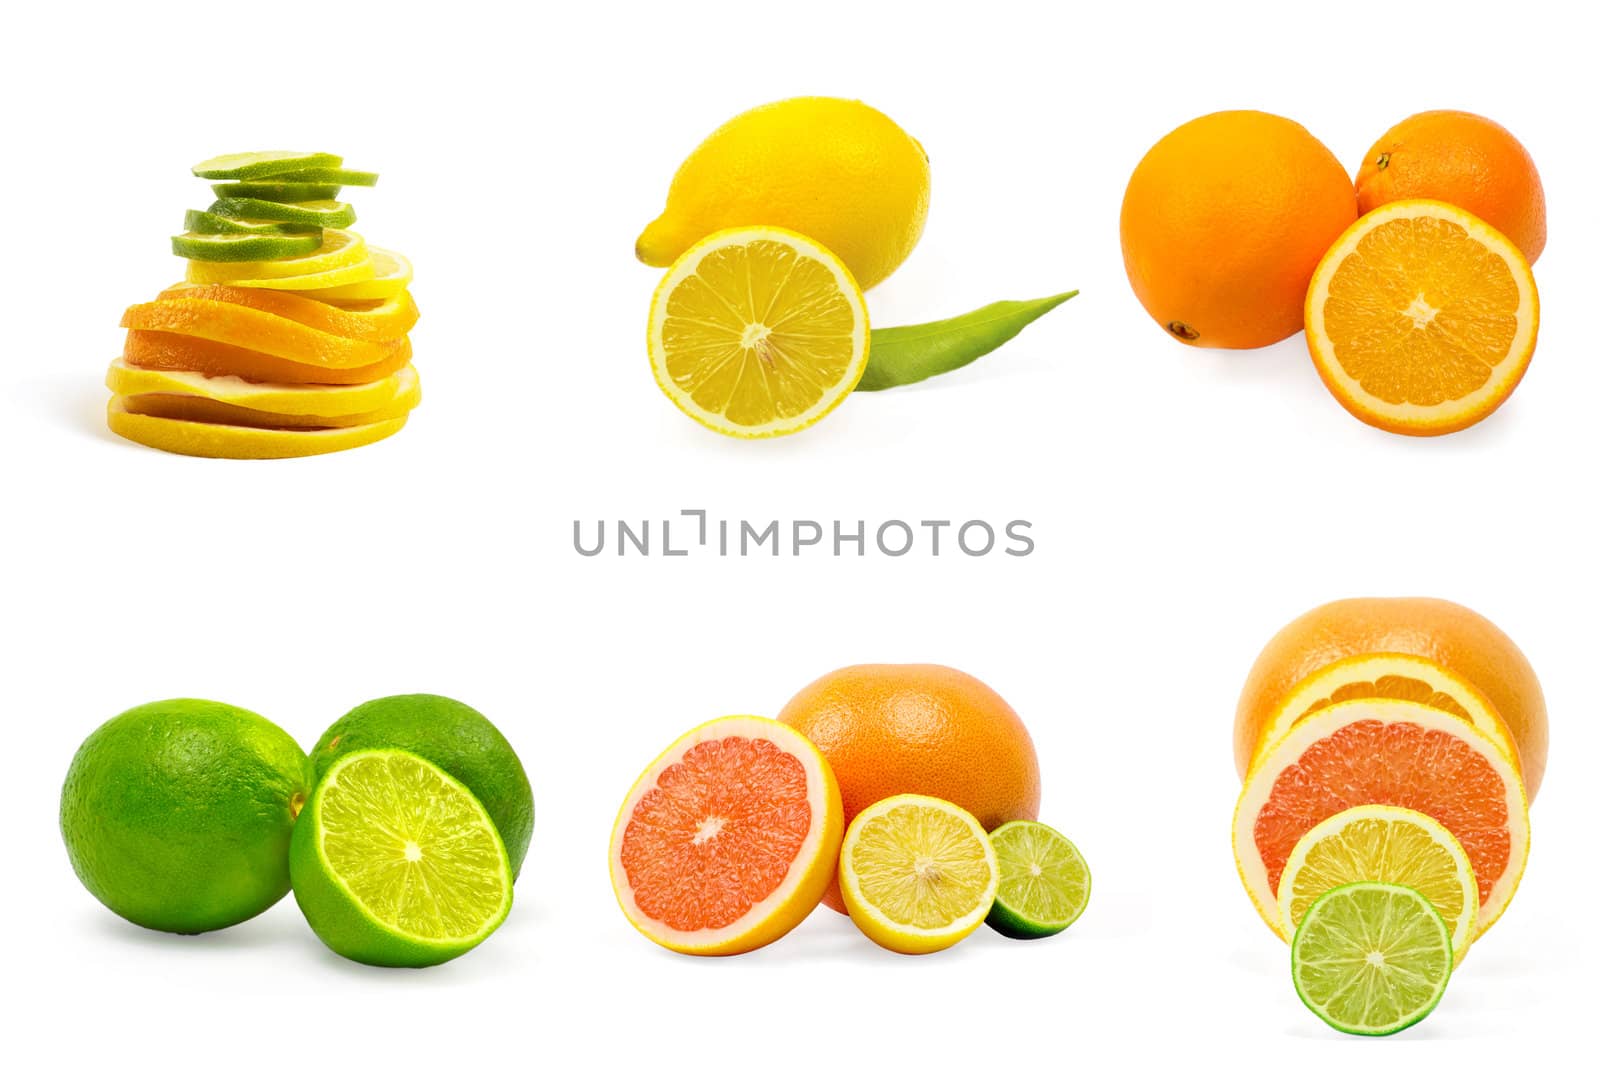 Set of fruits isolated on white background